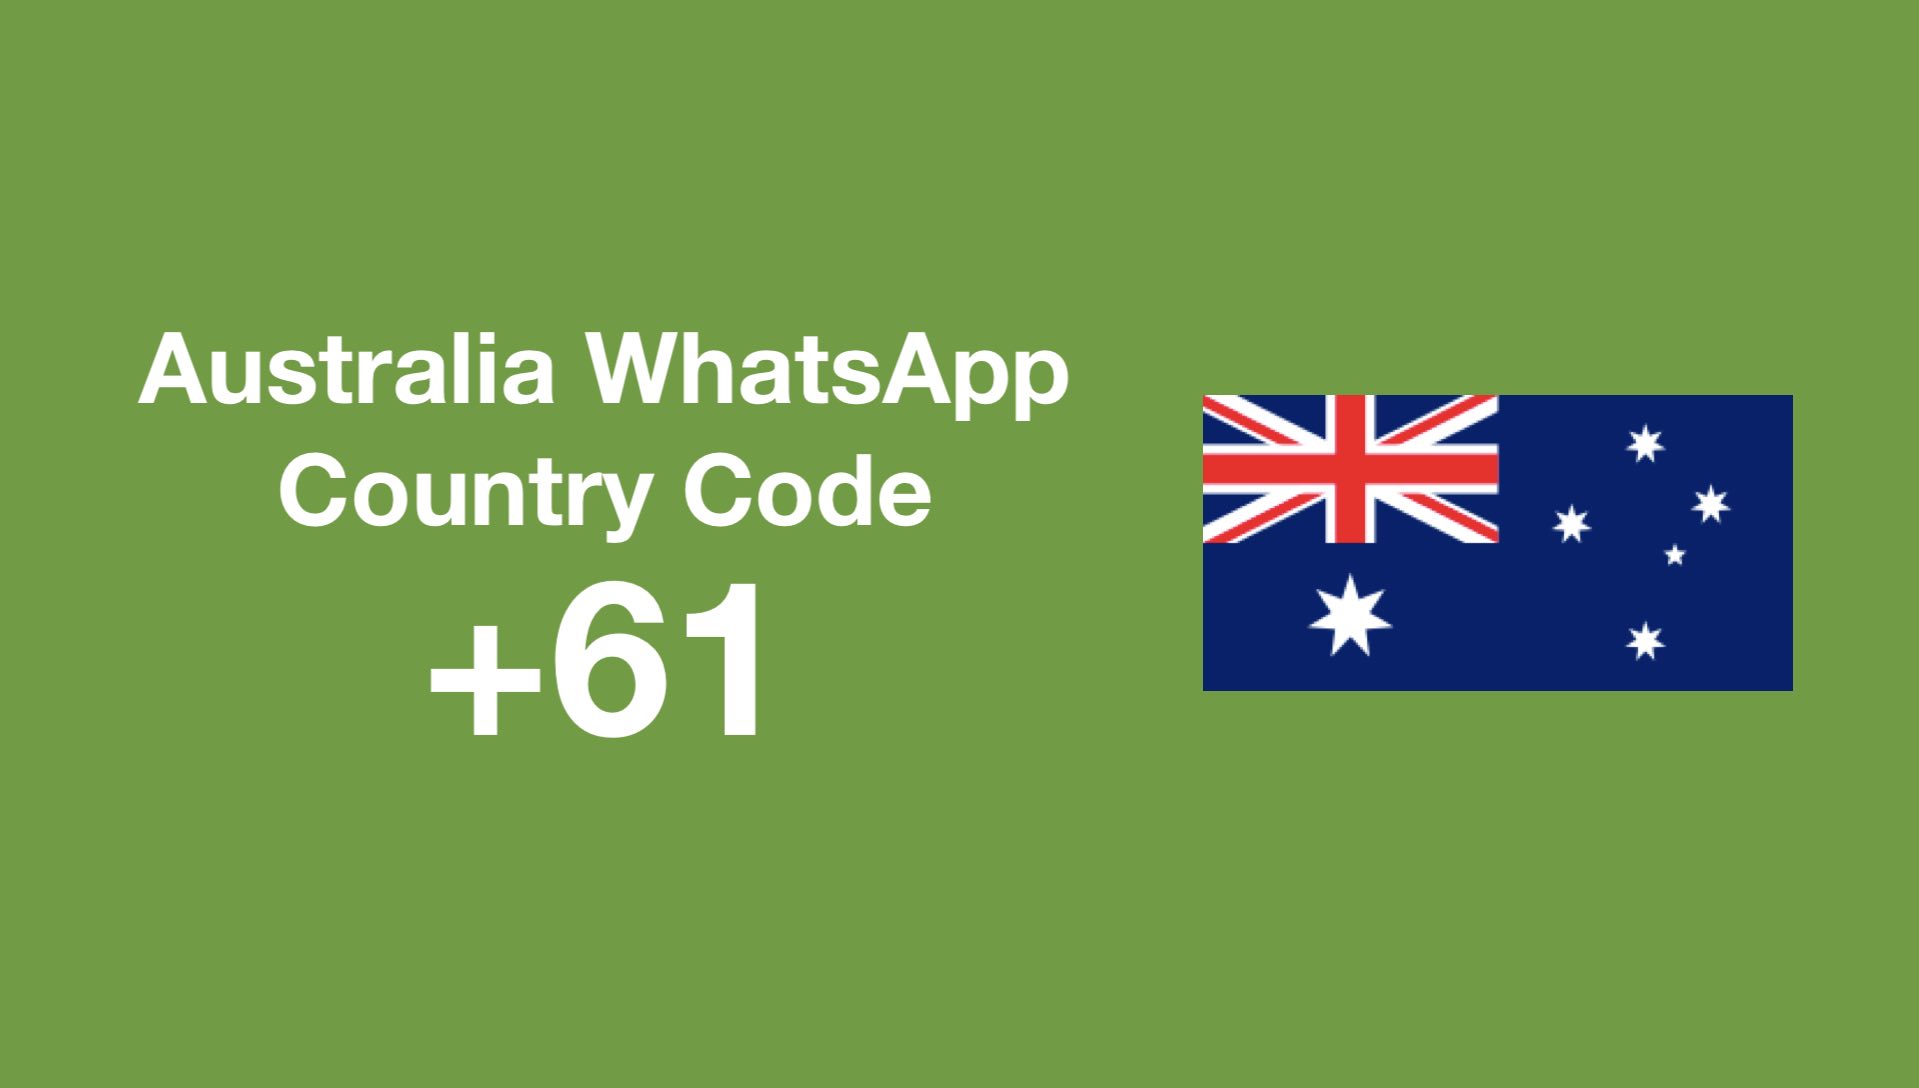 Australia WhatsApp country code 61